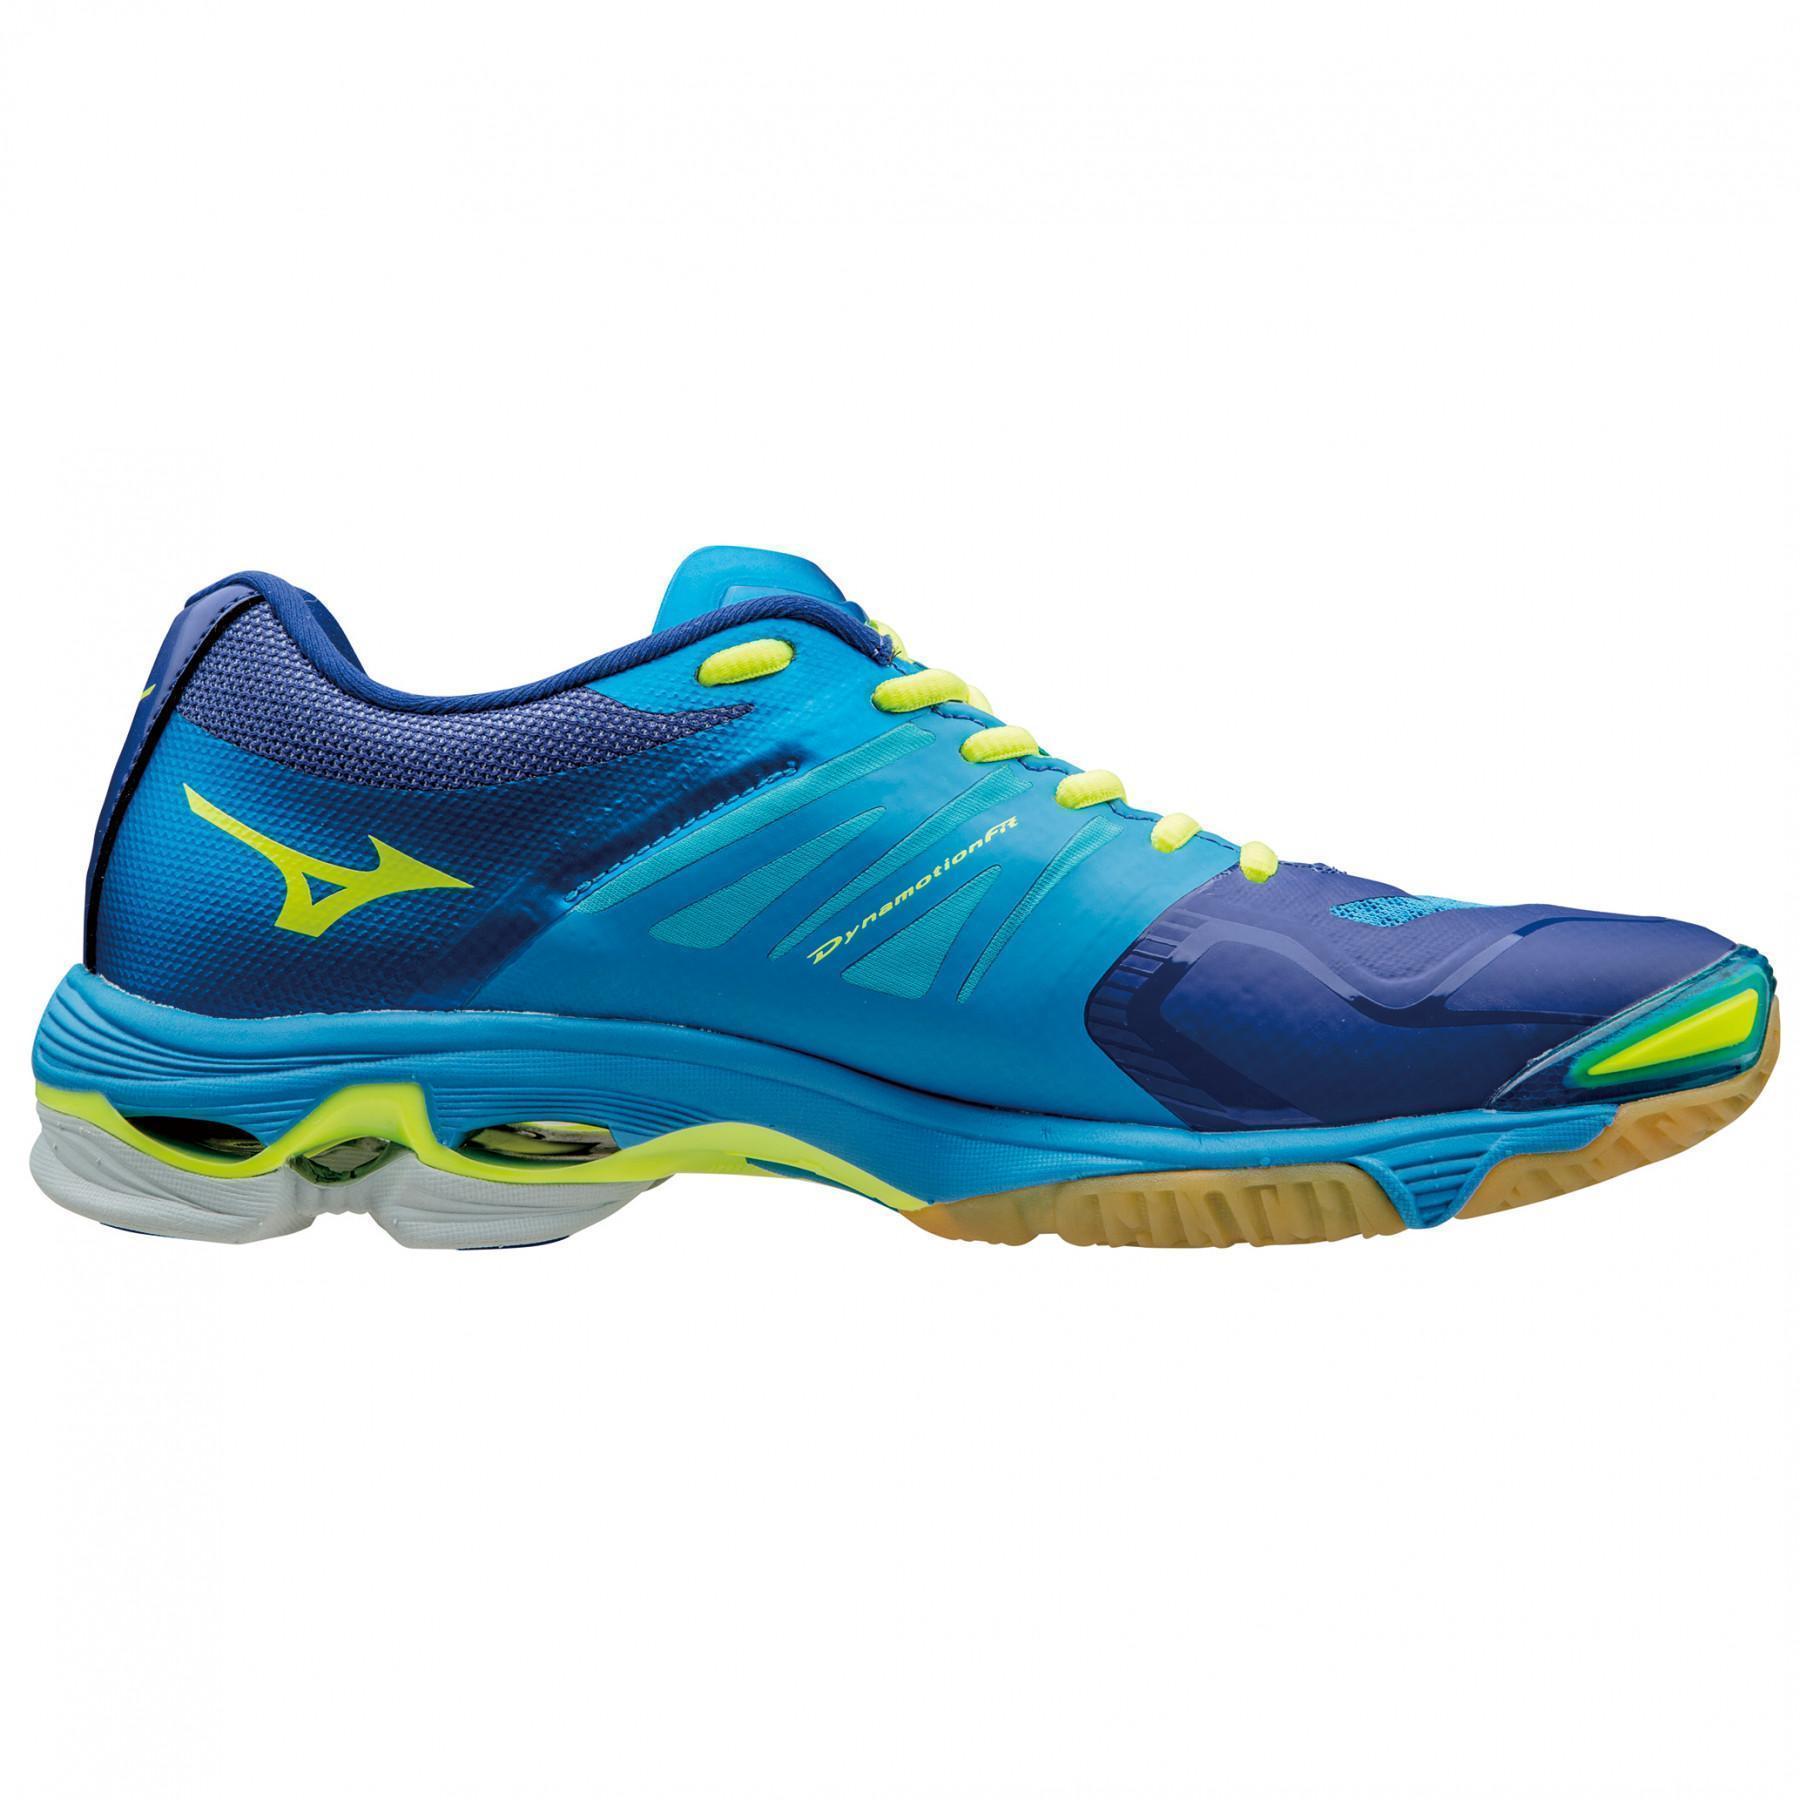 Sapatos Mizuno Wave Lightning Z2 bleu/jaune/bleu clair